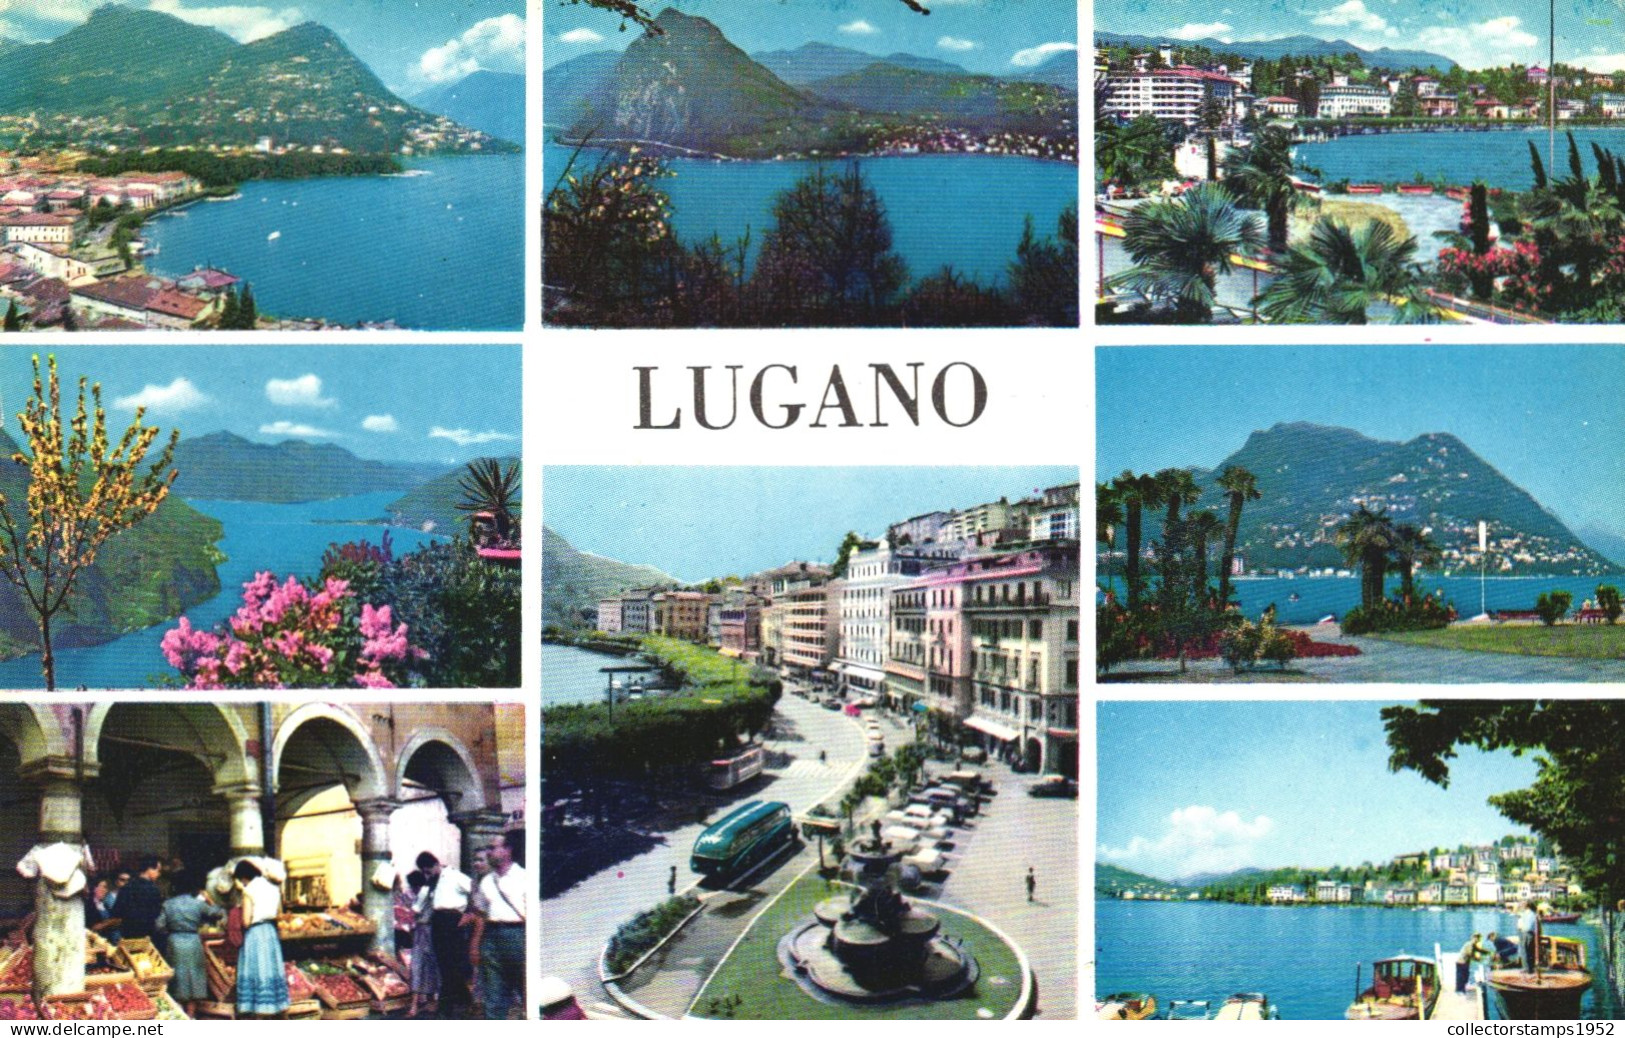 LUGANO, TICINO, MULTIPLE VIEWS, ARCHITECTURE, LAKE, BOATS, MARKET, FOUNTAIN, BOATS, PORT, SWITZERLAND, POSTCARD - Lugano